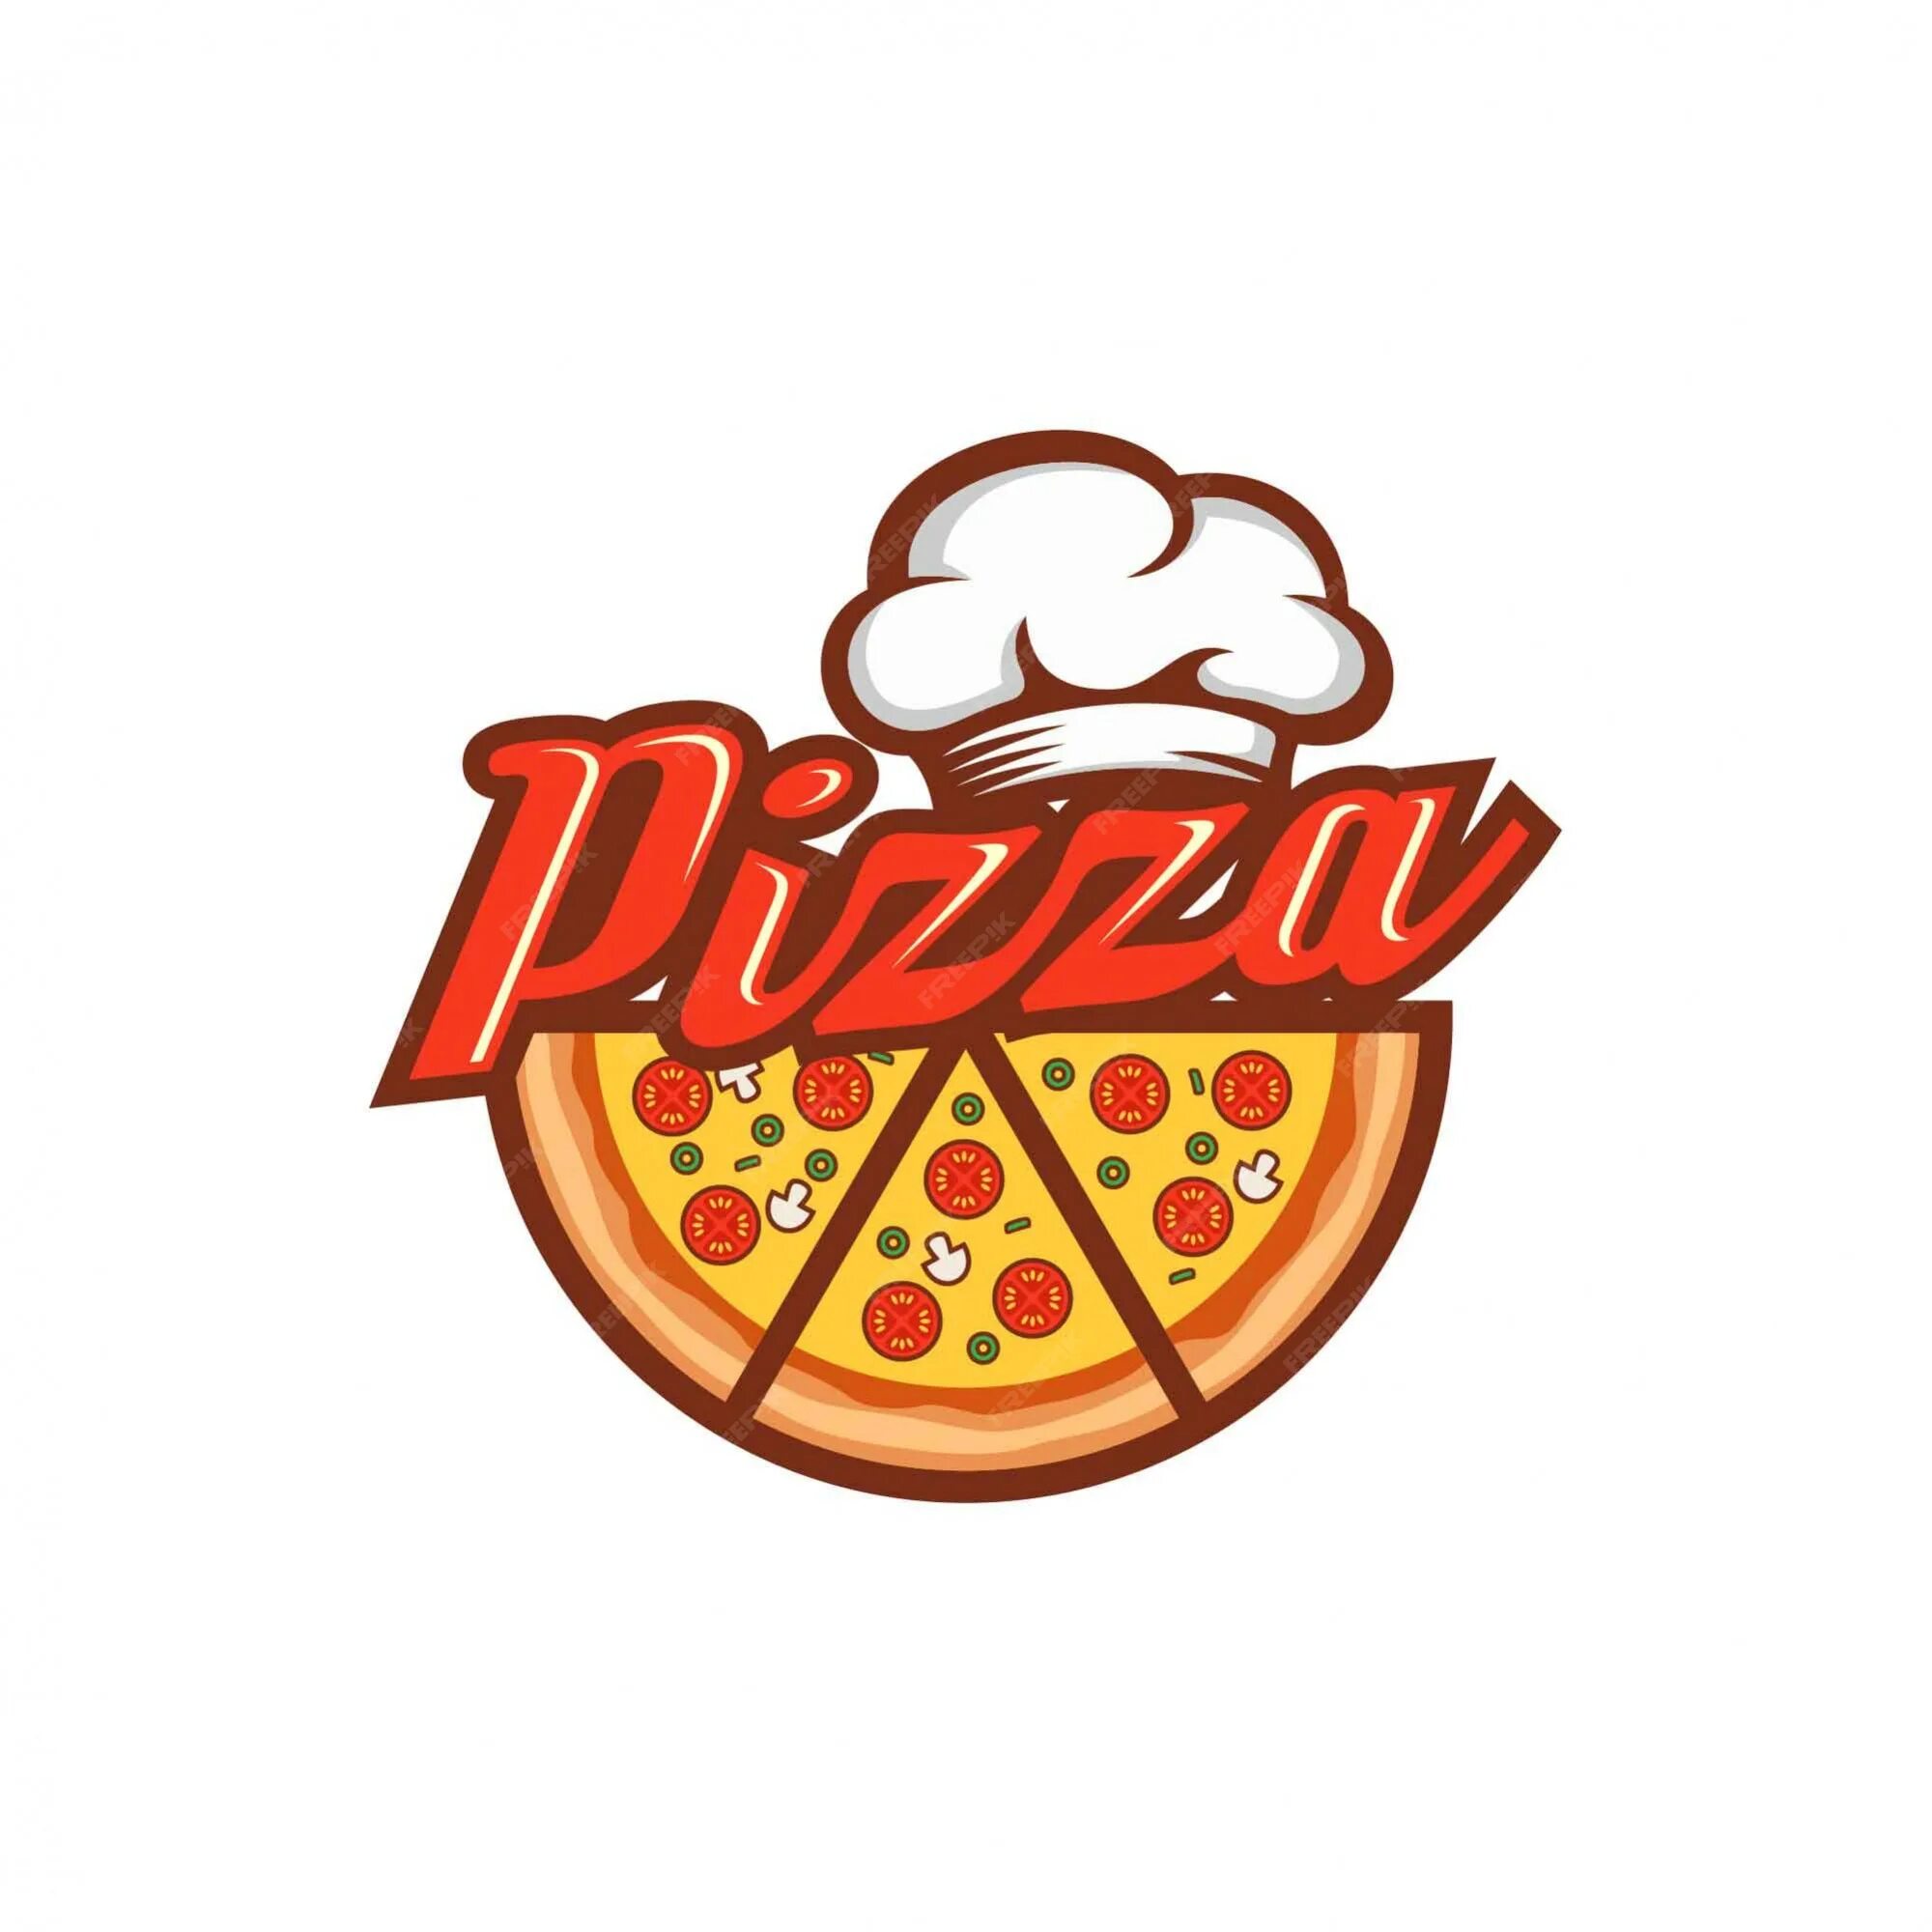 Пиццерия слово. Эмблема пиццерии. Пицца логотип. Логотип пиццерии pizza. Итальянская пиццерия логотип.